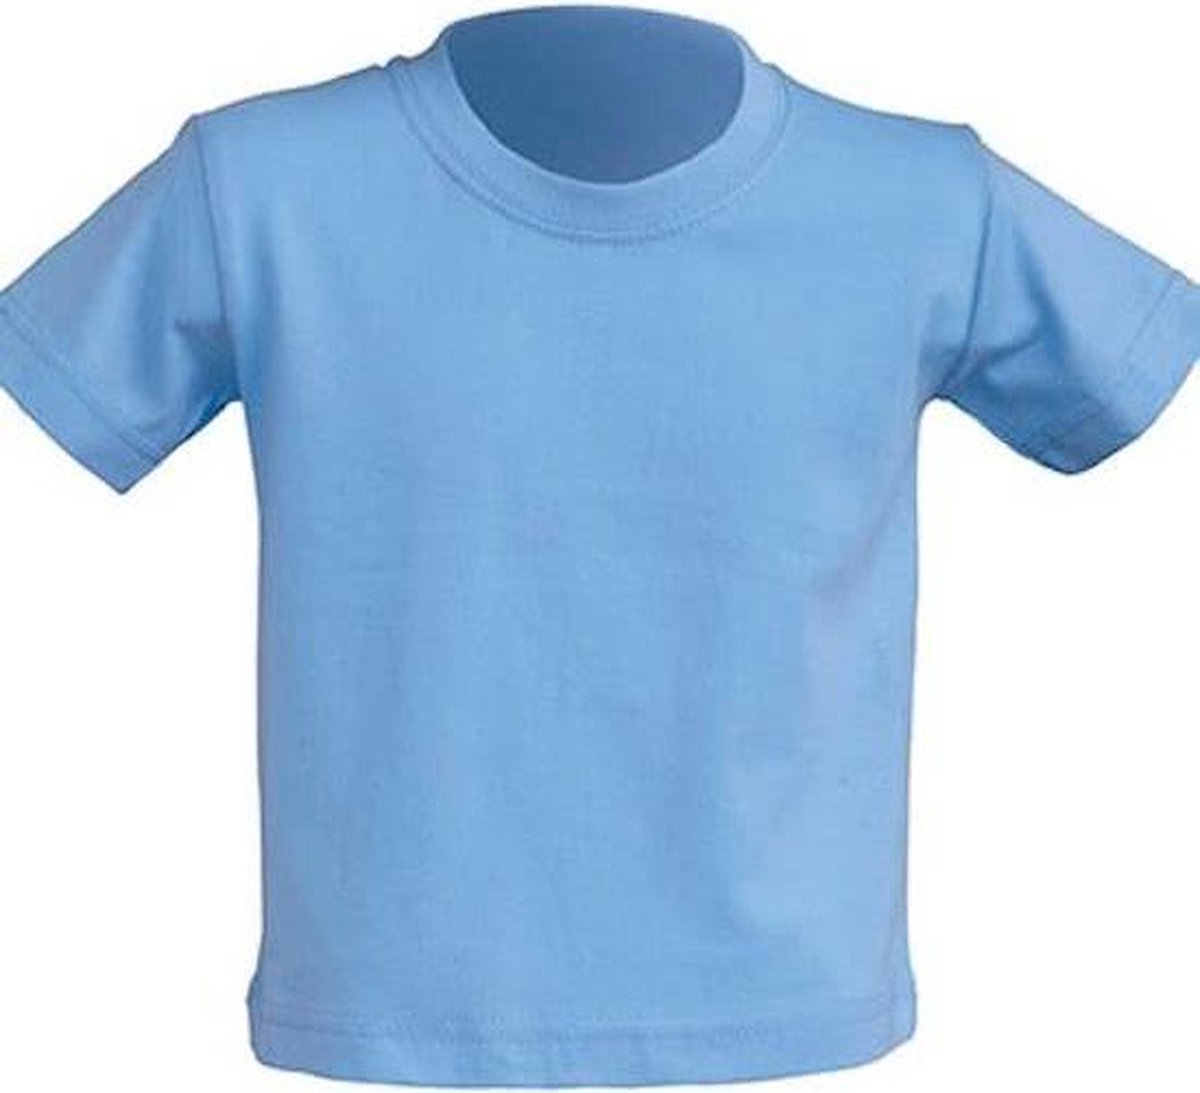 JHK Baby t-shirtjes in sky blue maat 1 jaar - set van 5 stuks